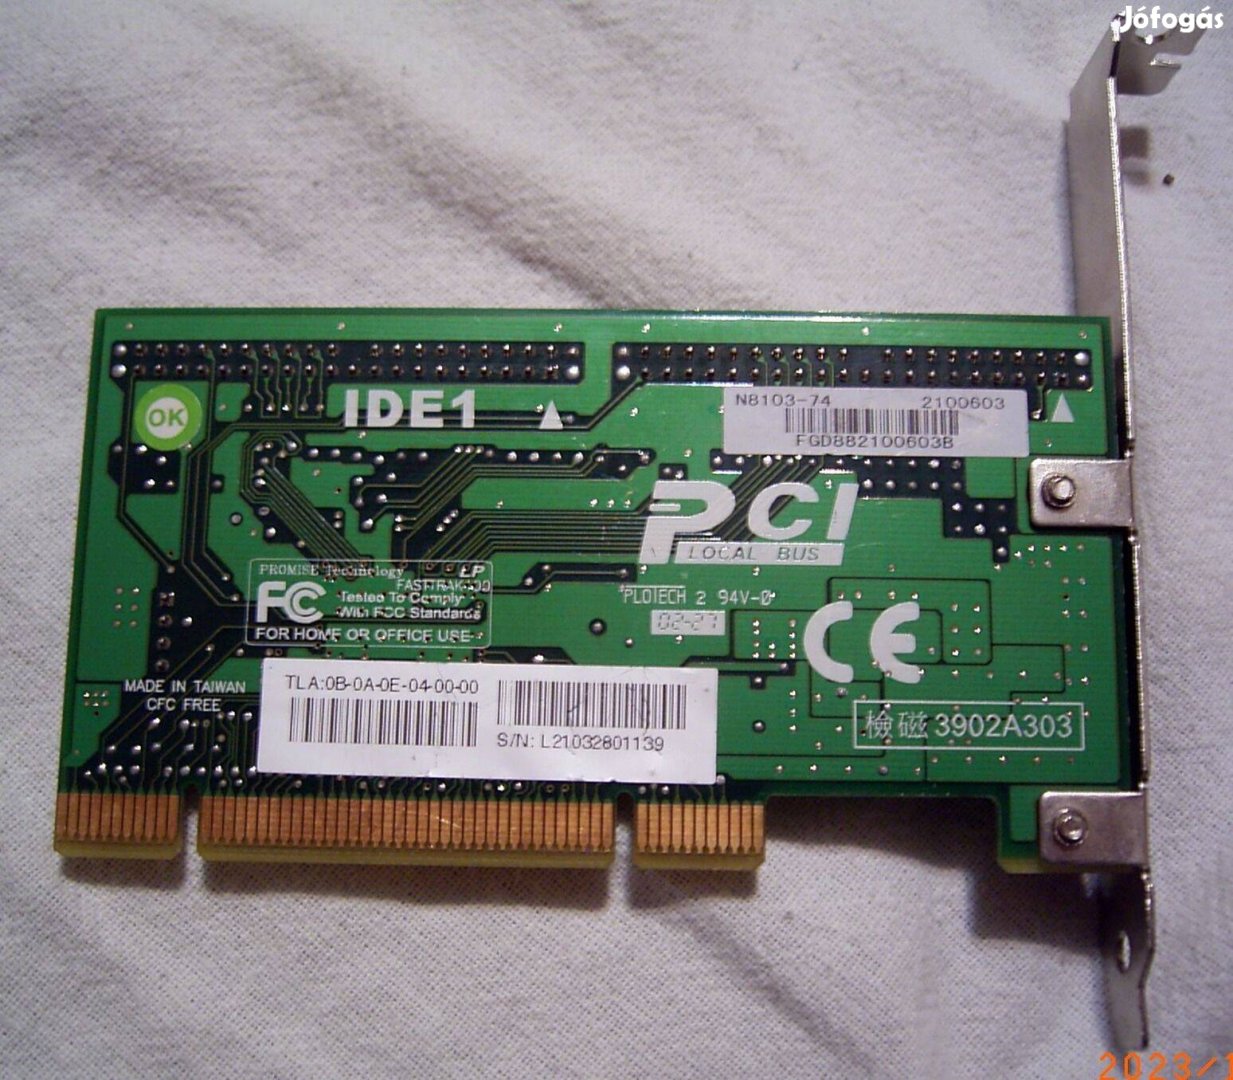 Eladó egy IDE / PATA RAID PCI-os kártya, Fasttrak100LP tipusú